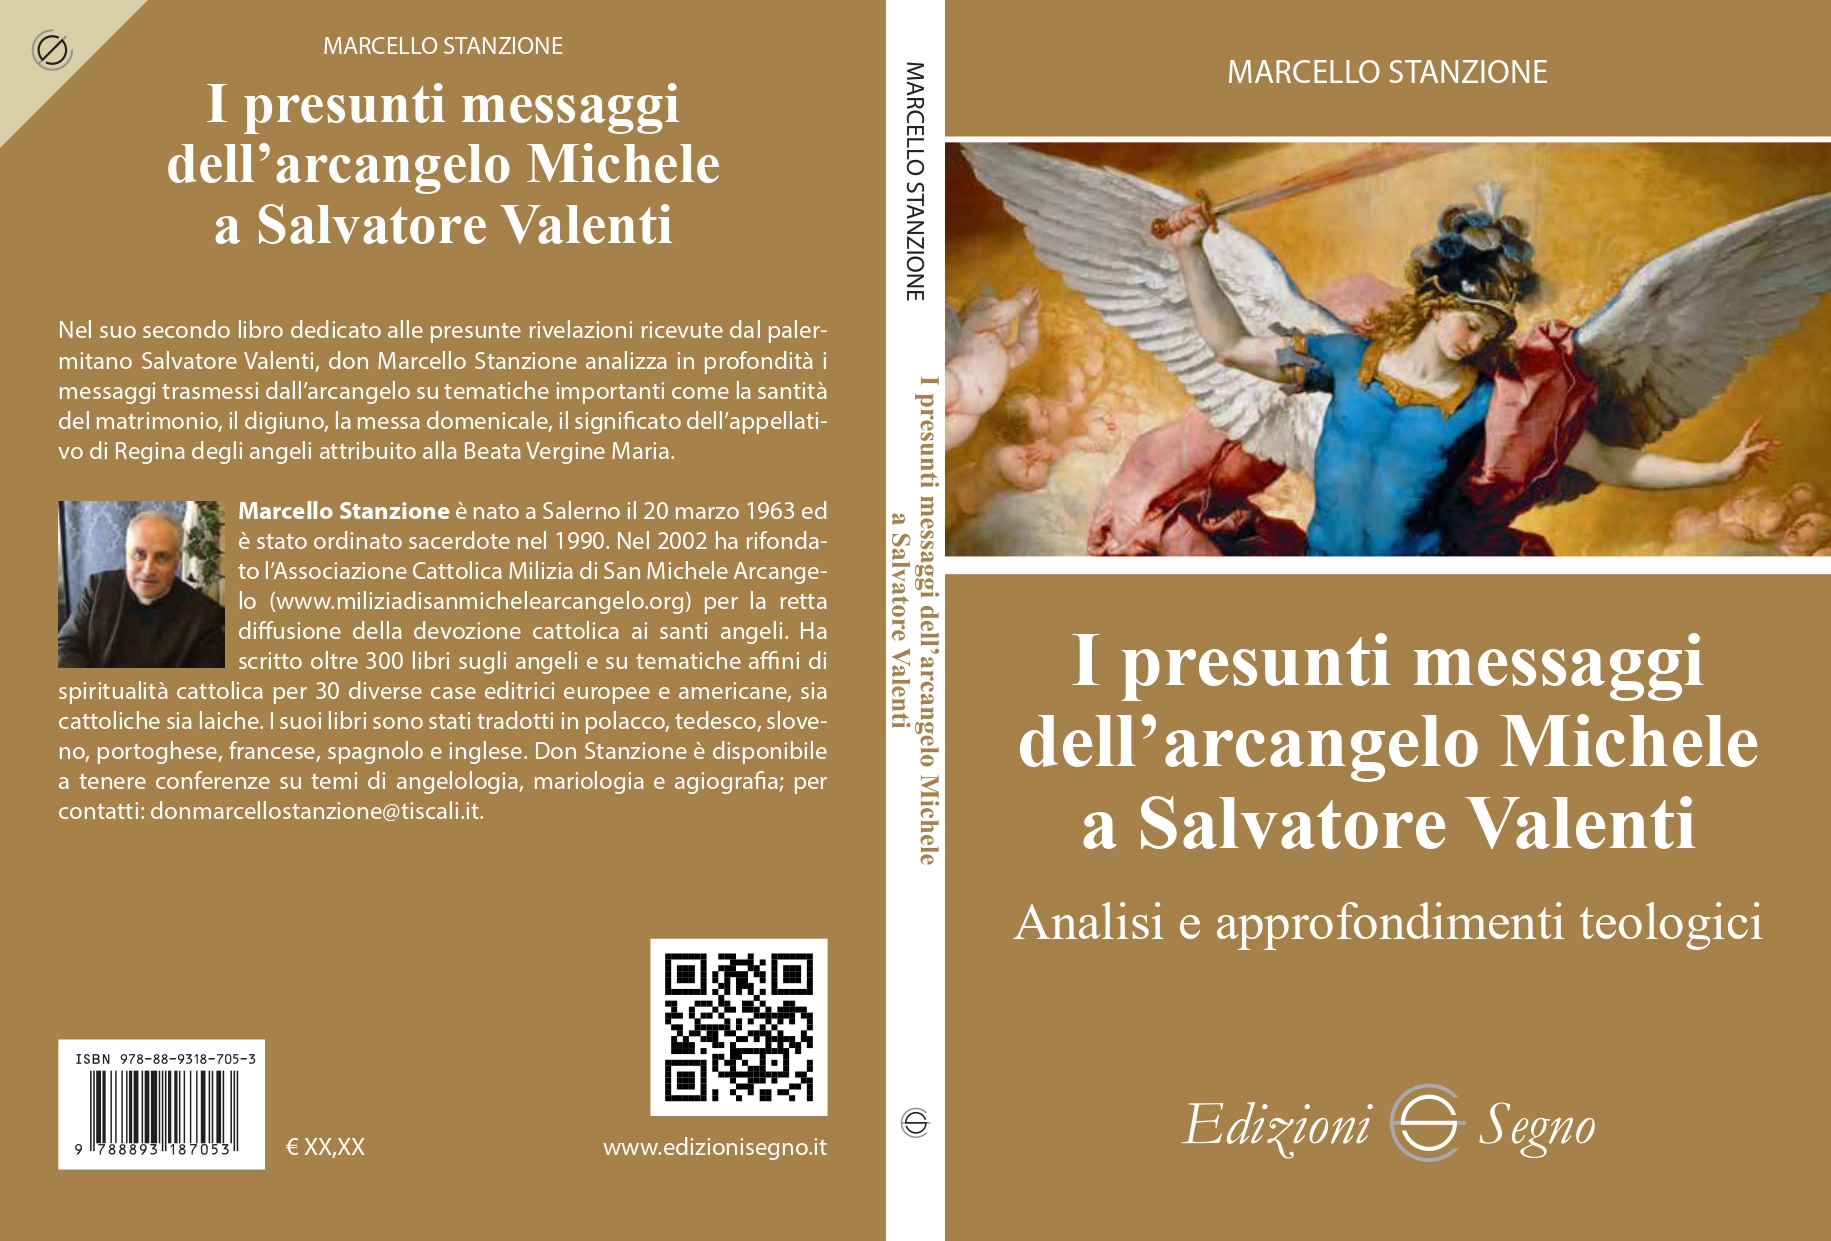 Secondo libro su presunti messaggi di San Michele a Valenti